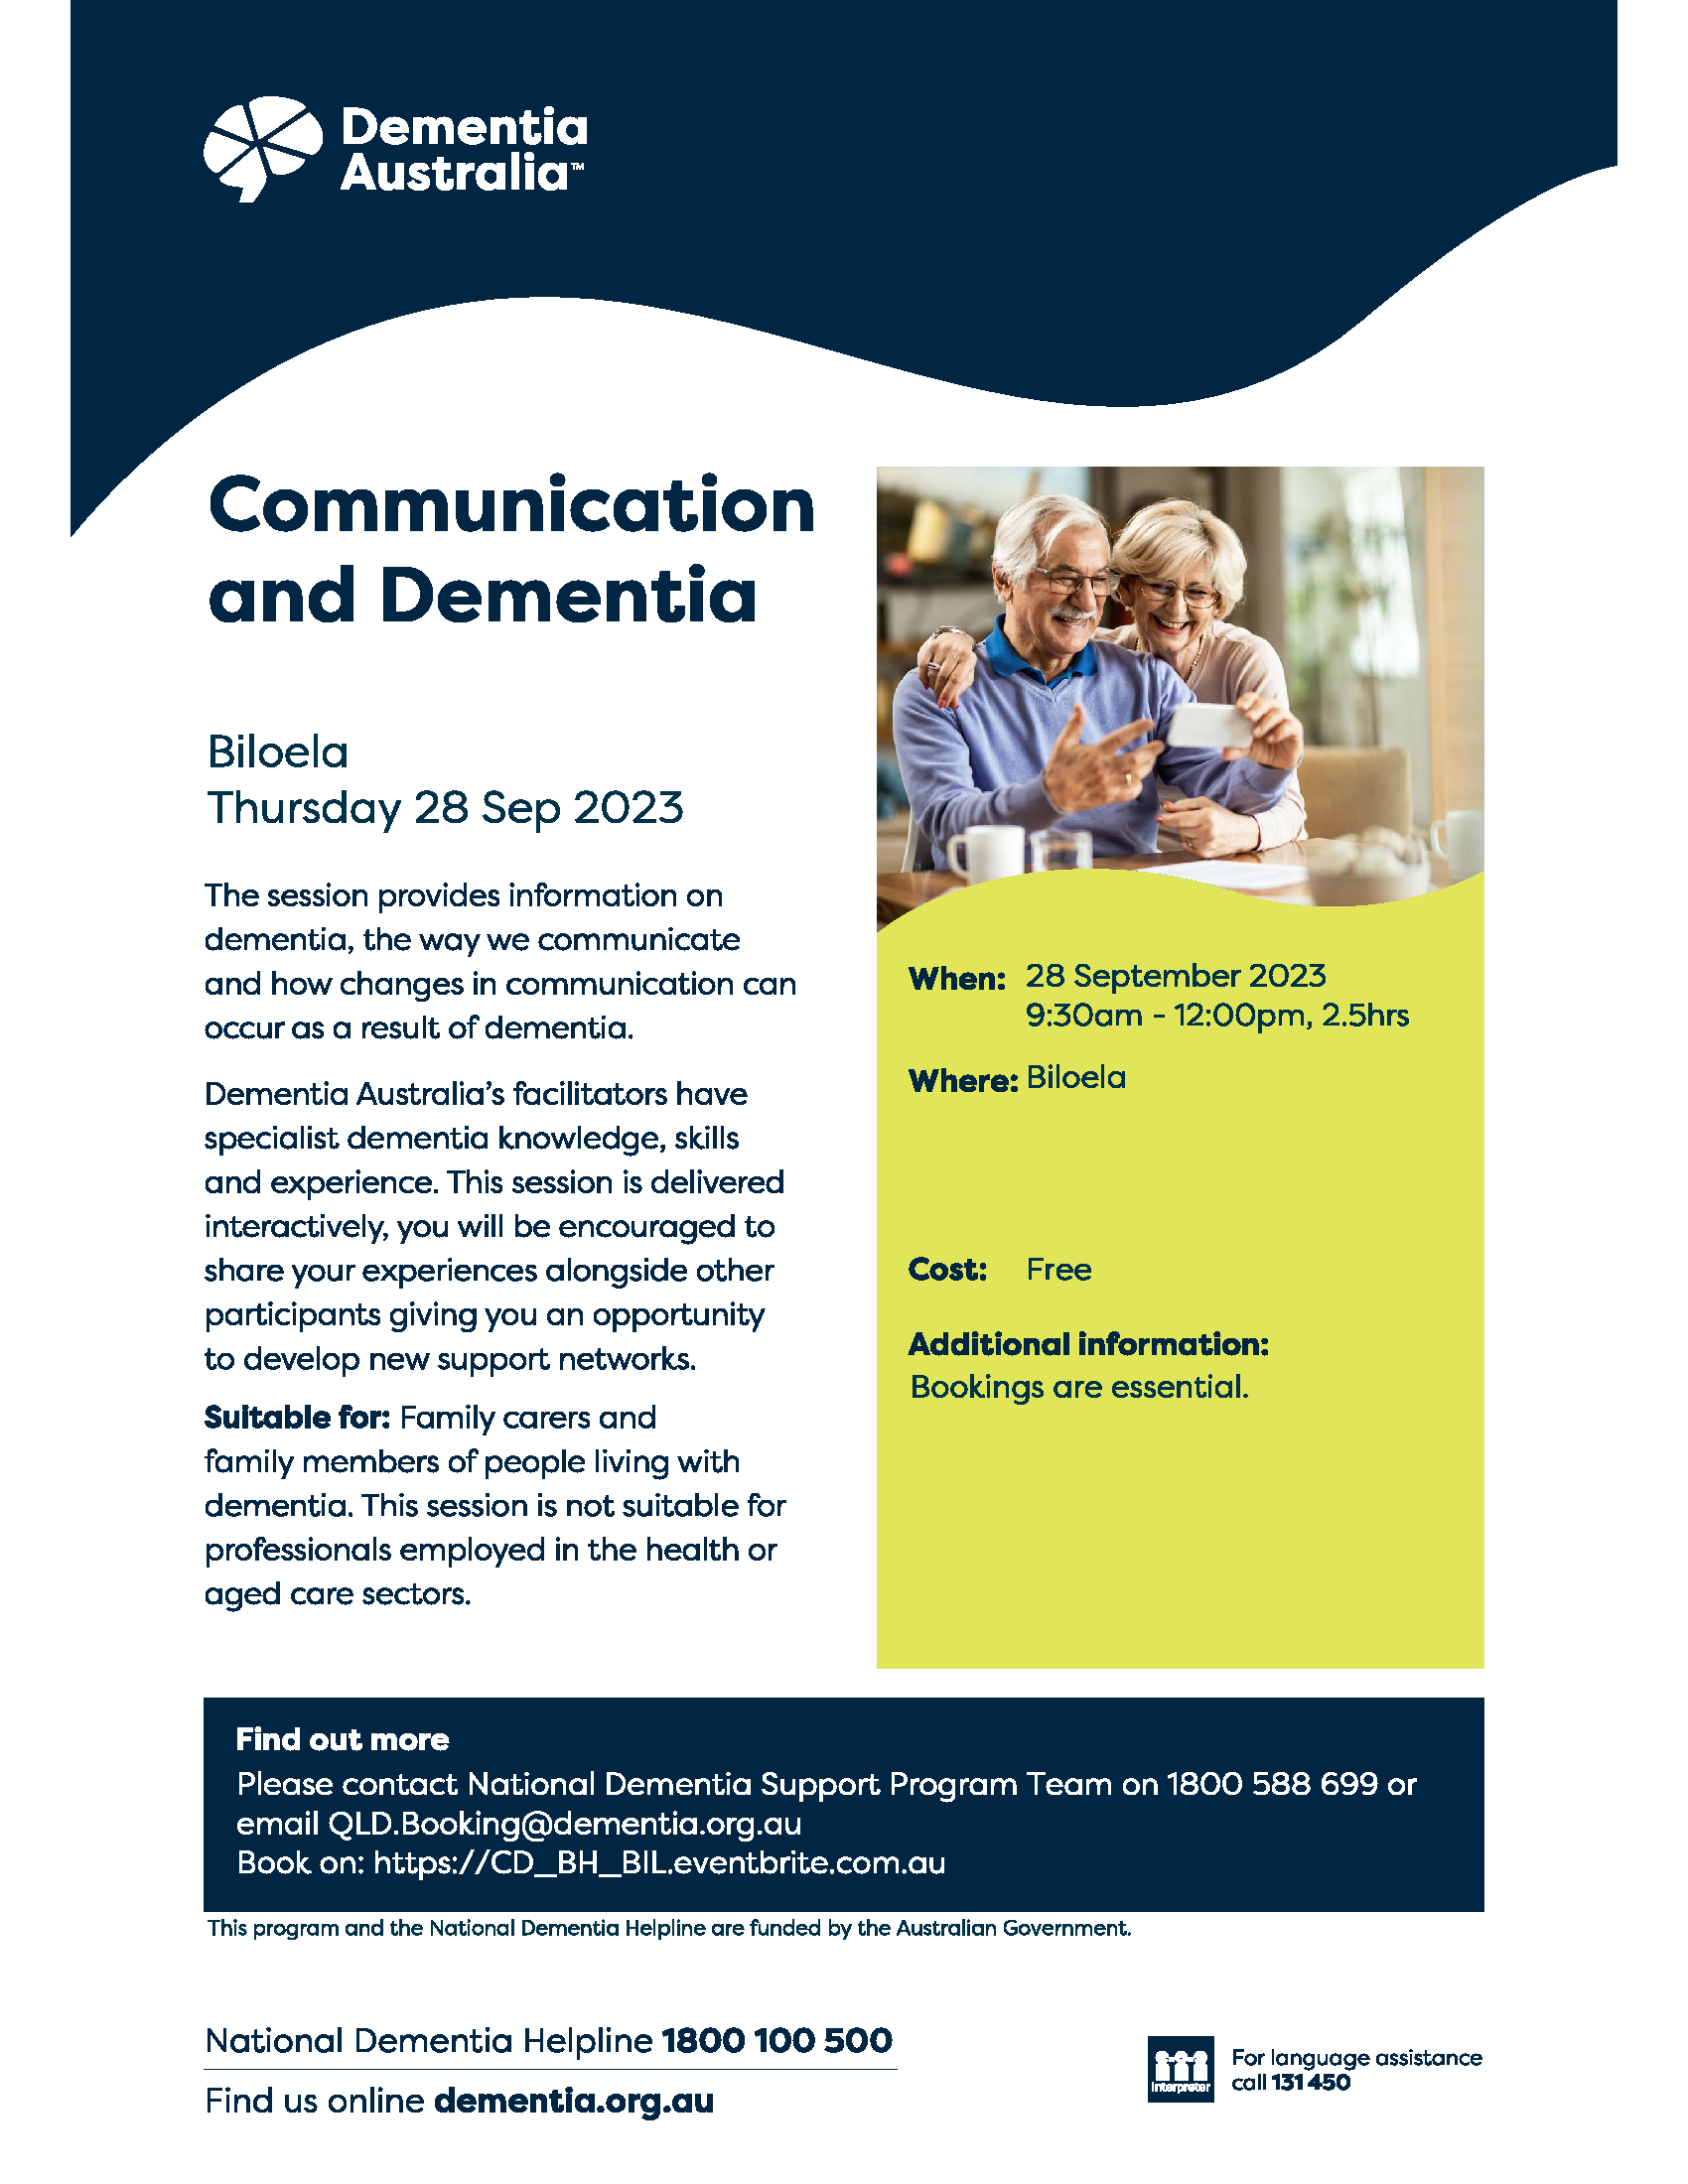 Communication and dementia biloela 280923 1